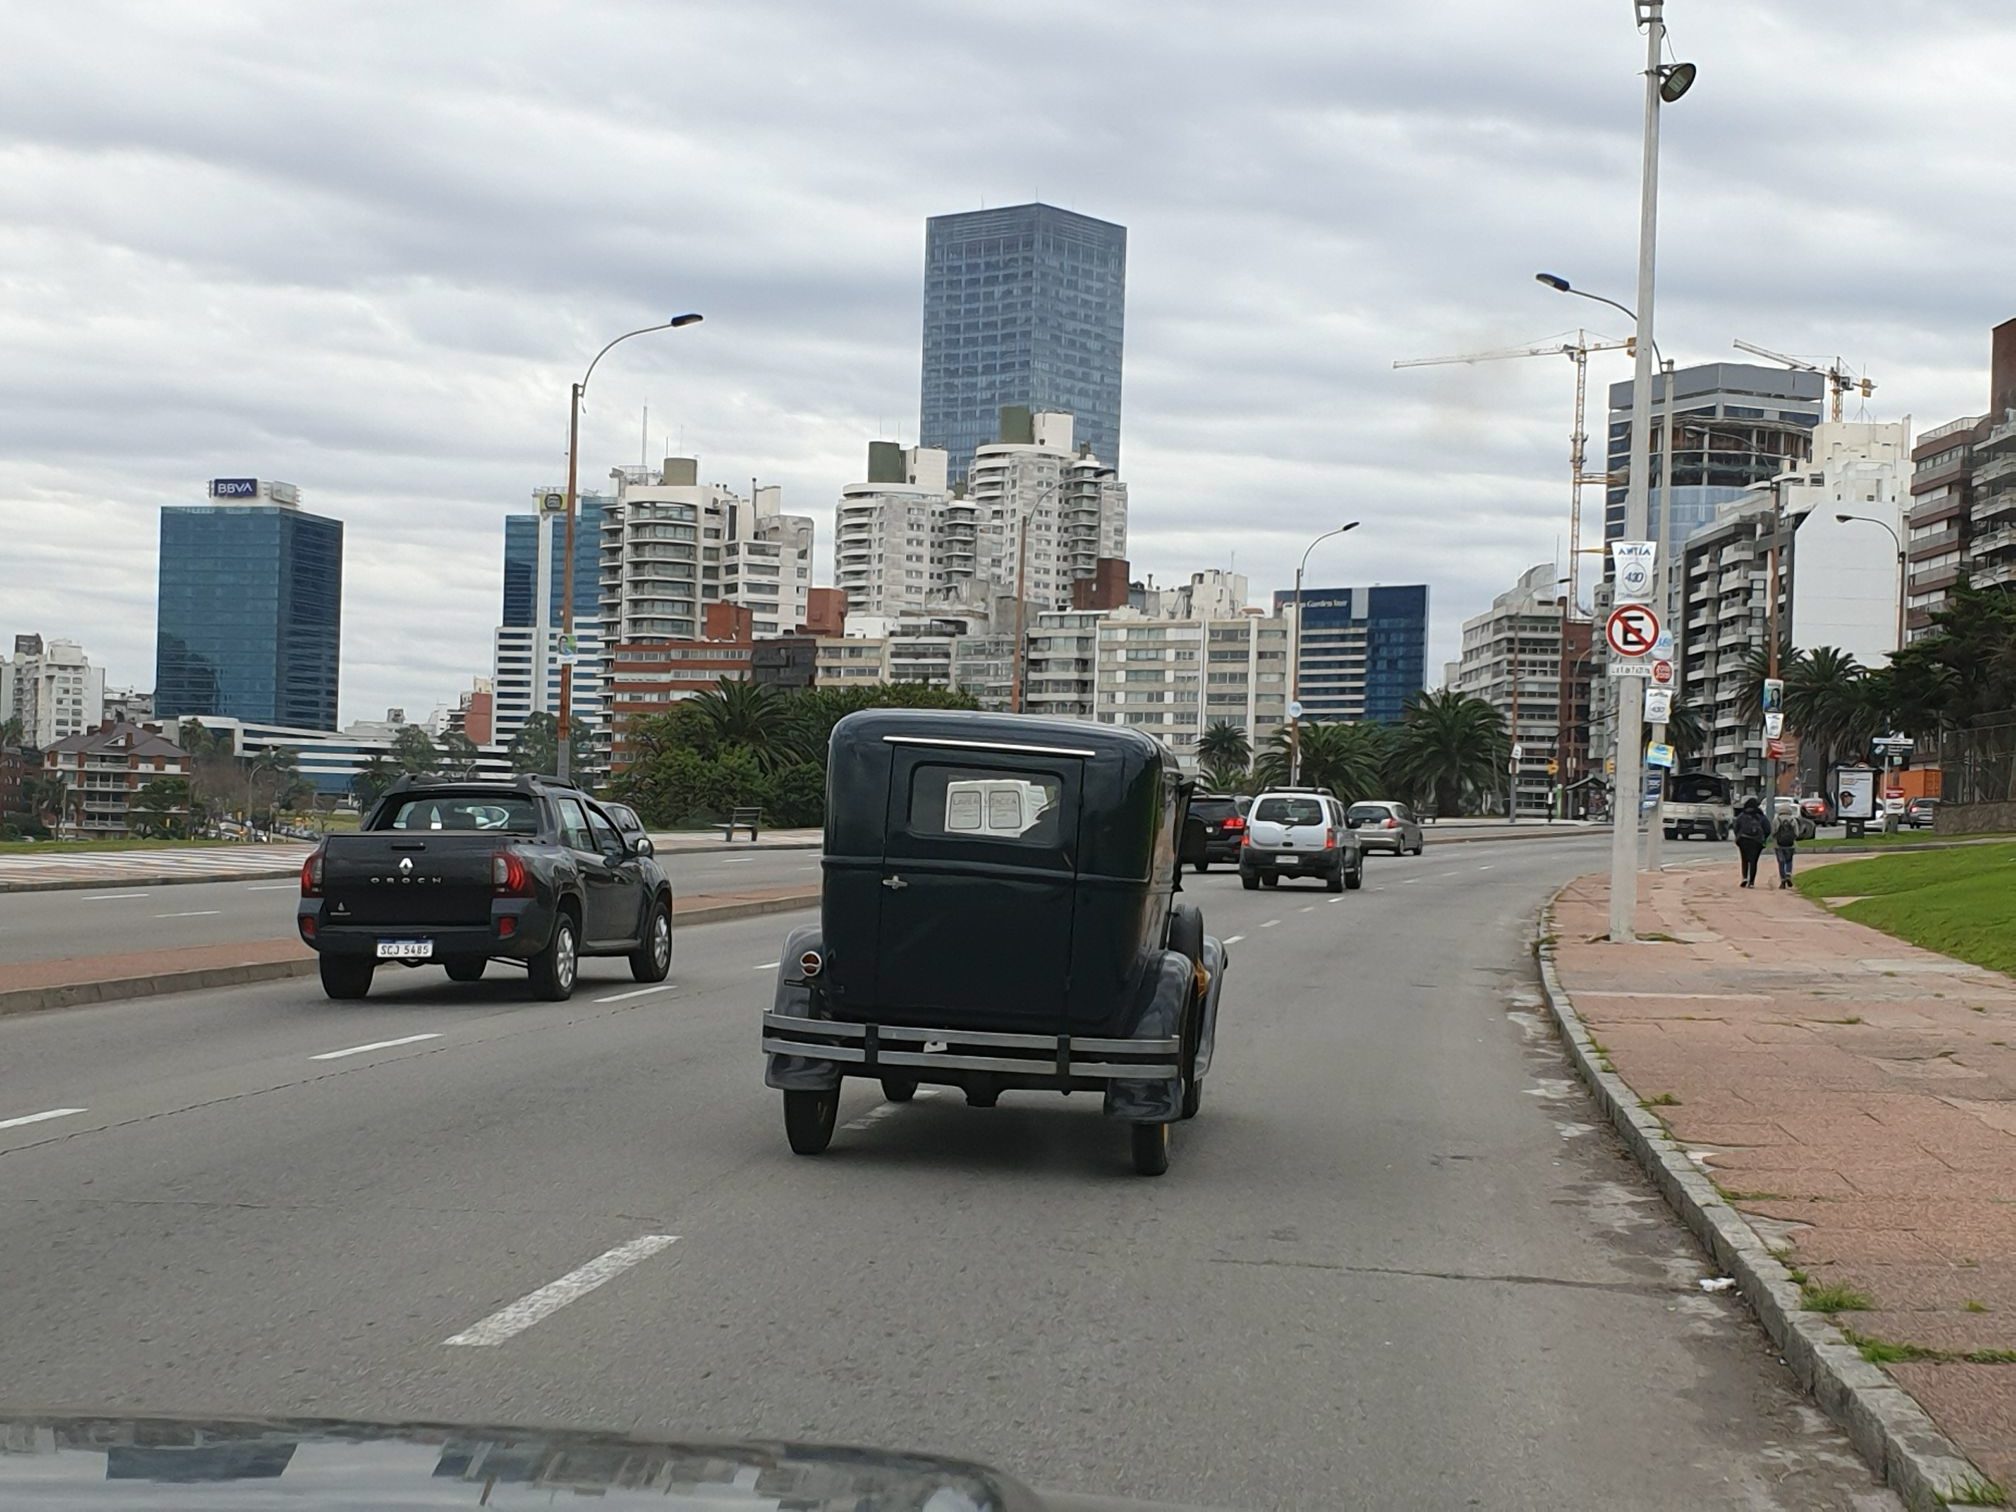 Auf Montevideos Straßen